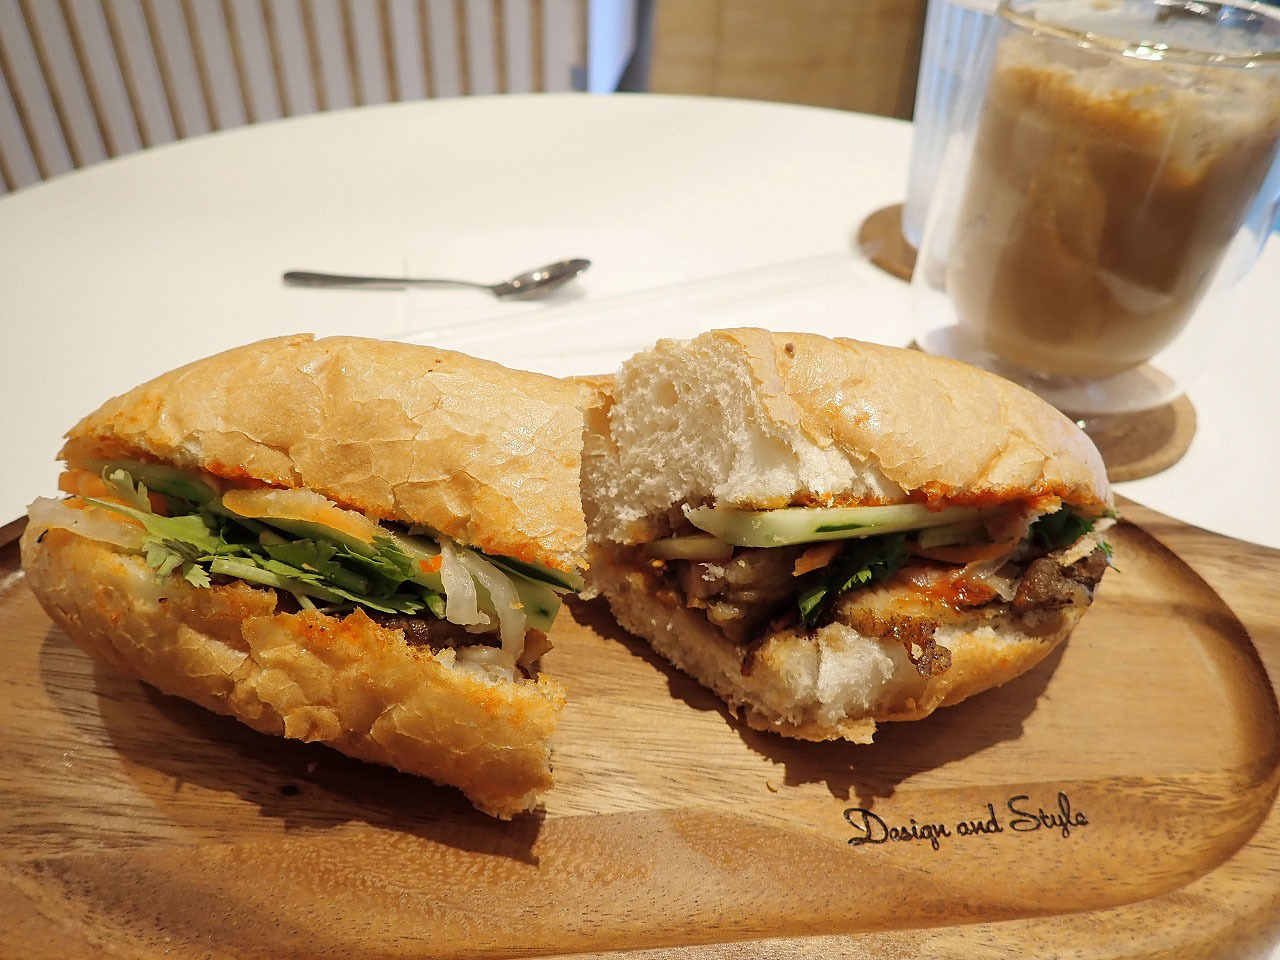 バインミーはベトナムで人気の品で、柔らかめの小さなフランスパンに具を挟んだサンドイッチです